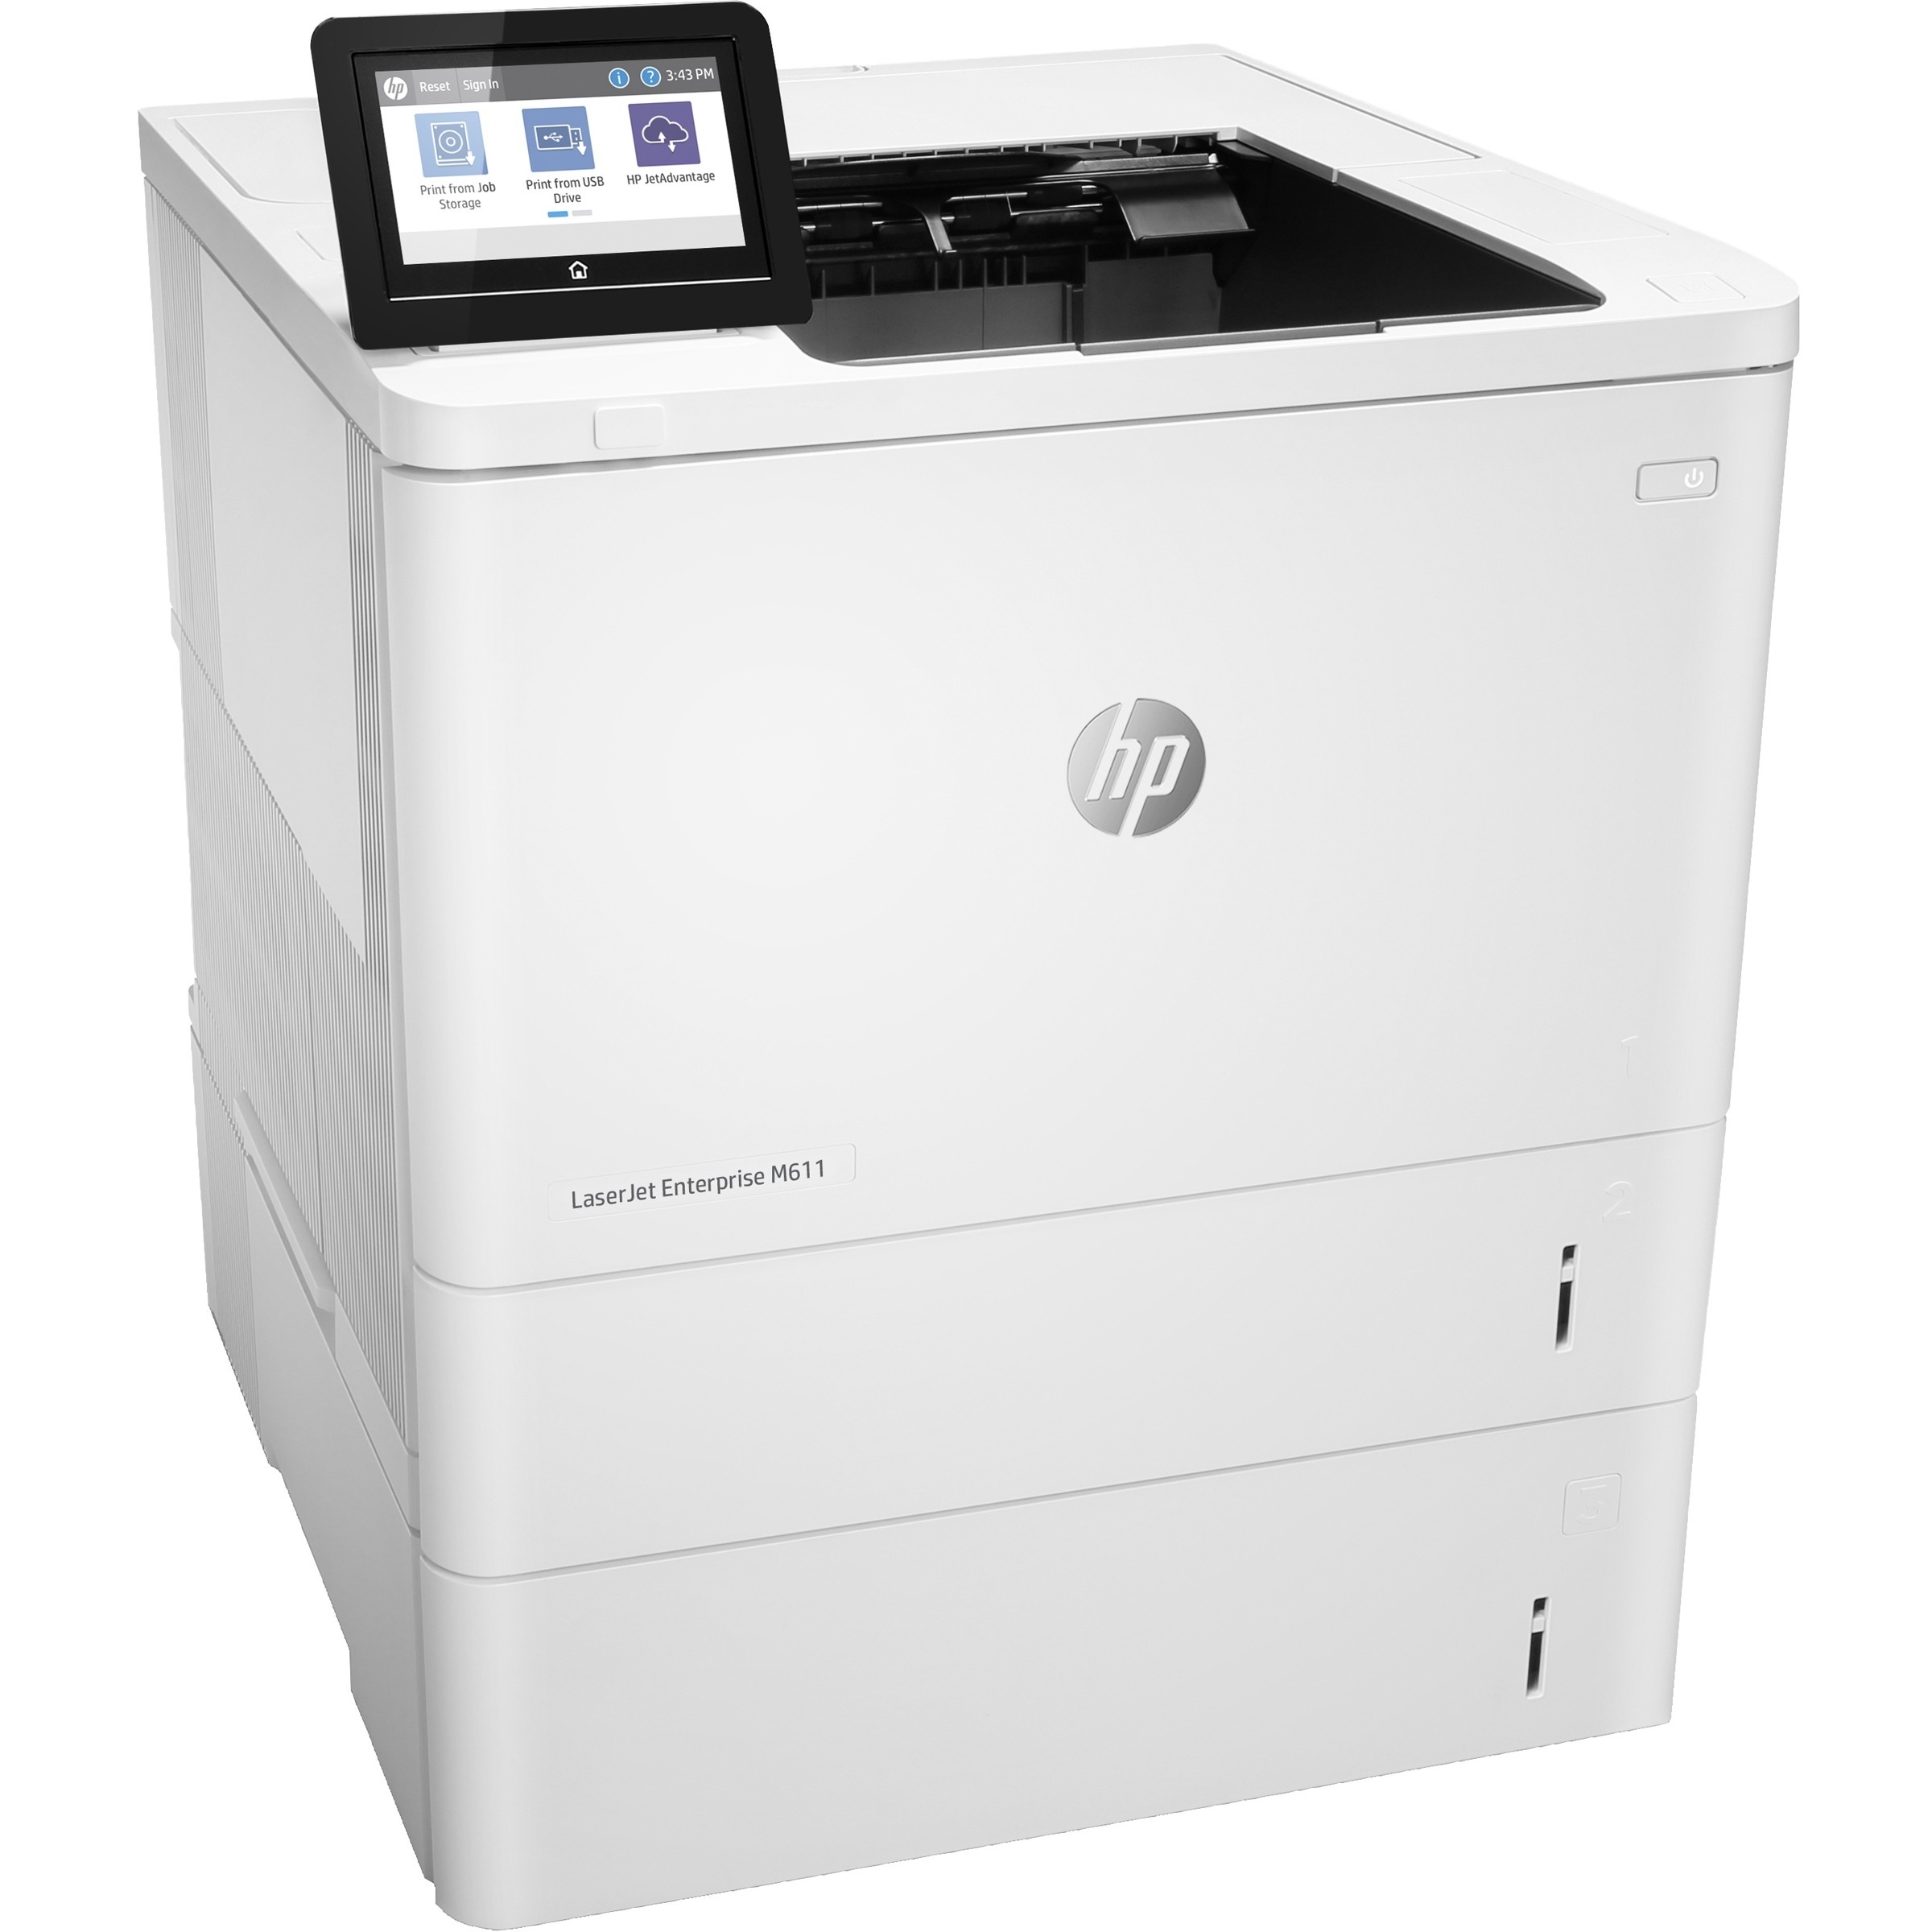 HP LaserJet Enterprise M611x Desktop Laser Printer - Monochrome - 65 ppm Mono - 1200 x 1200 dpi Prin...